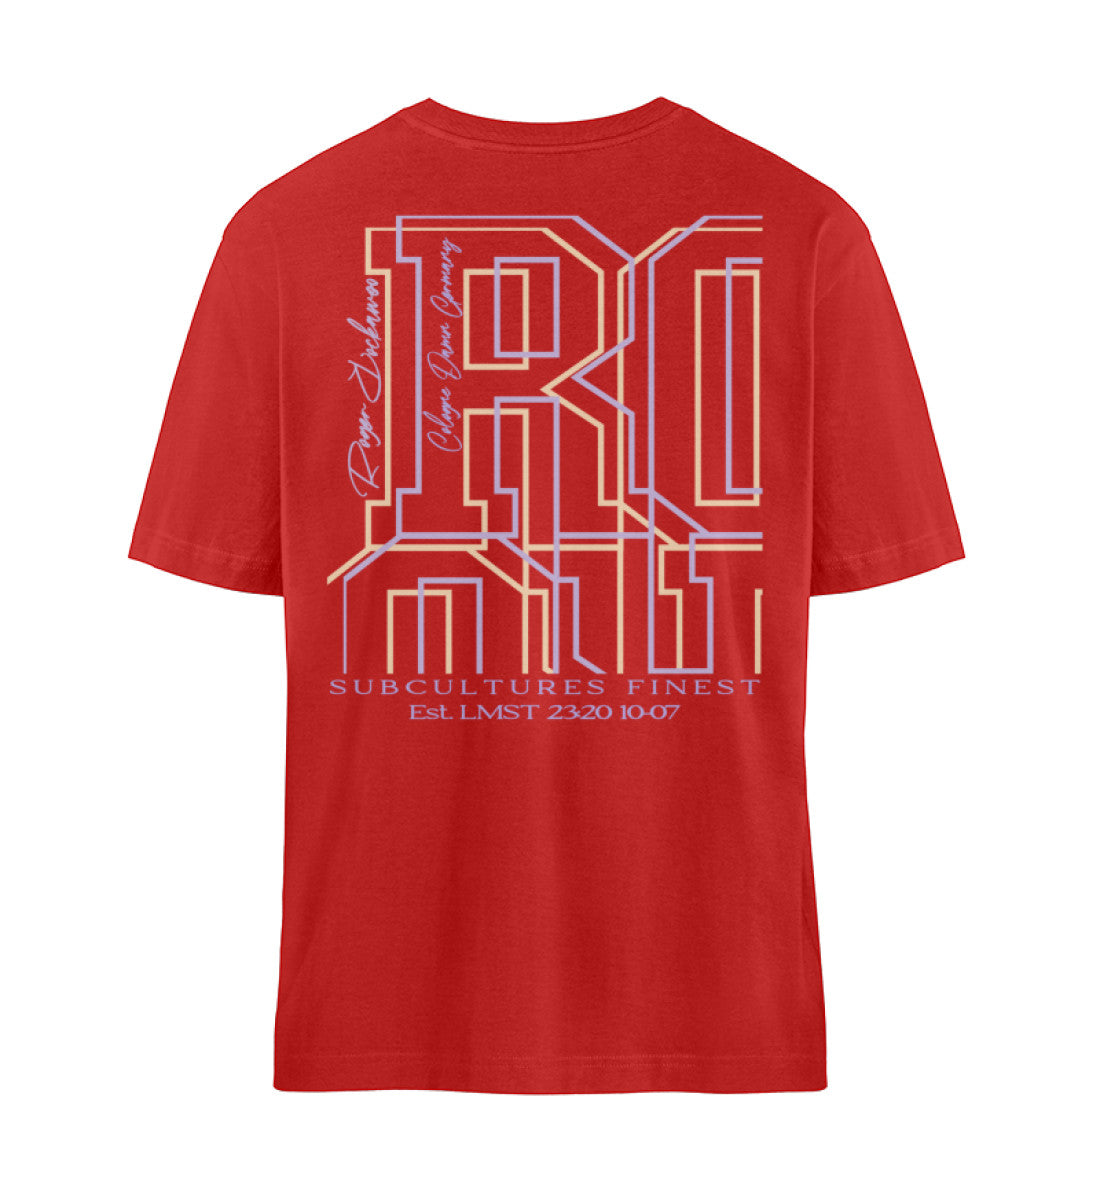 Rotes T-Shirt Unisex Relaxed Fit für Frauen und Männer bedruckt mit dem Design der Roger Rockawoo Kollektion and then yoga along